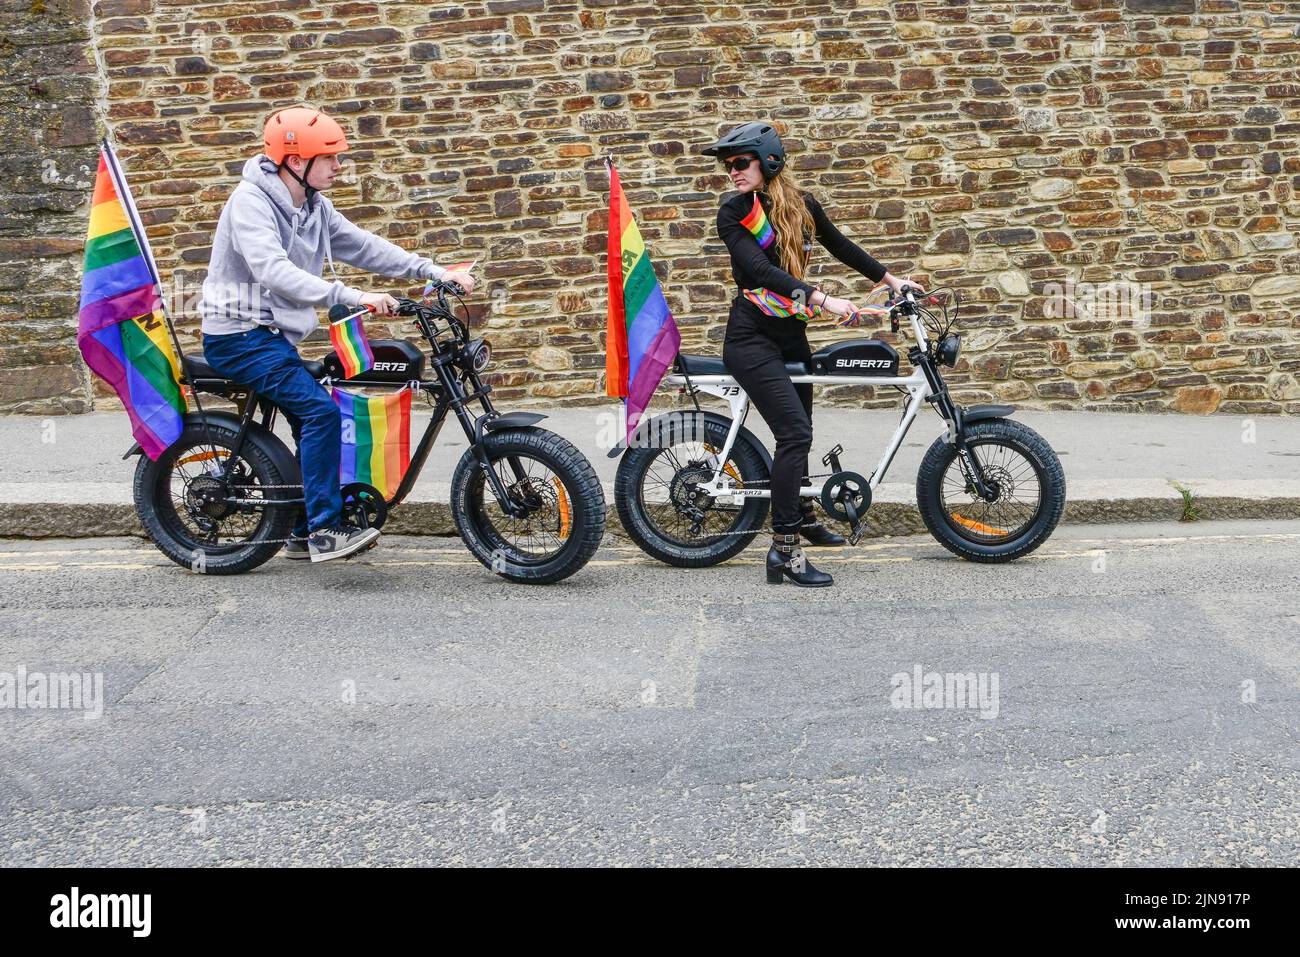 I piloti che usano biciclette elettriche Super 73 all'inizio della vivace e colorata Cornovaglia, sono orgogliosi della sfilata Pride nel centro di Newquay, nel Regno Unito. Foto Stock